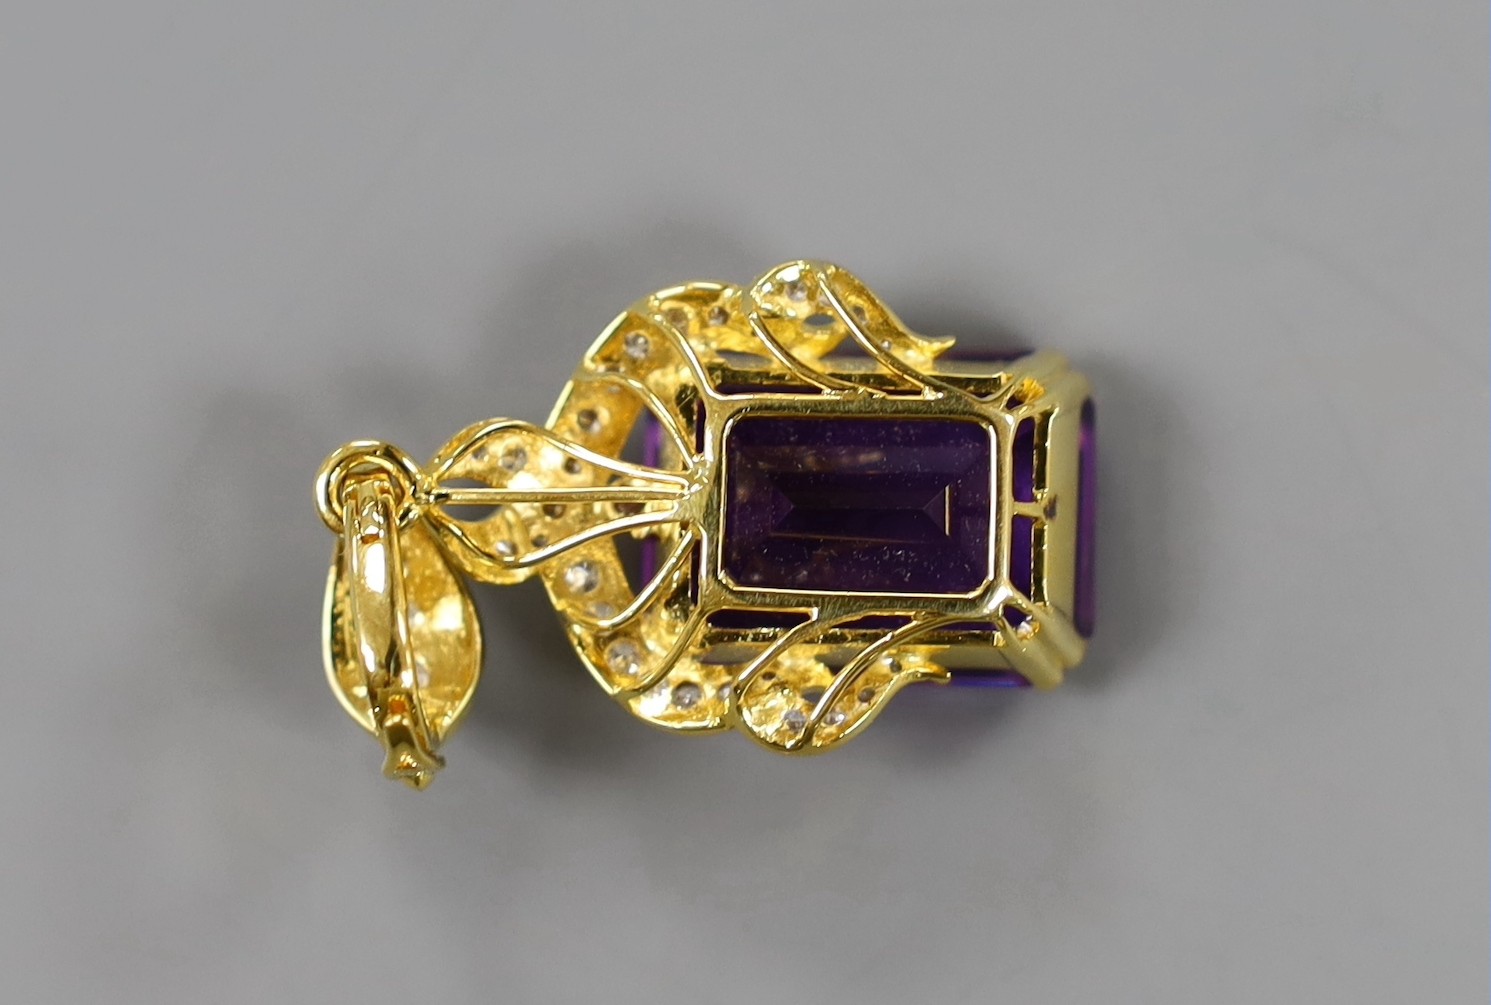 A modern yellow metal, emerald cut amethyst and diamond cluster set drop pendant, 45mm, gross weight 13.5 grams.